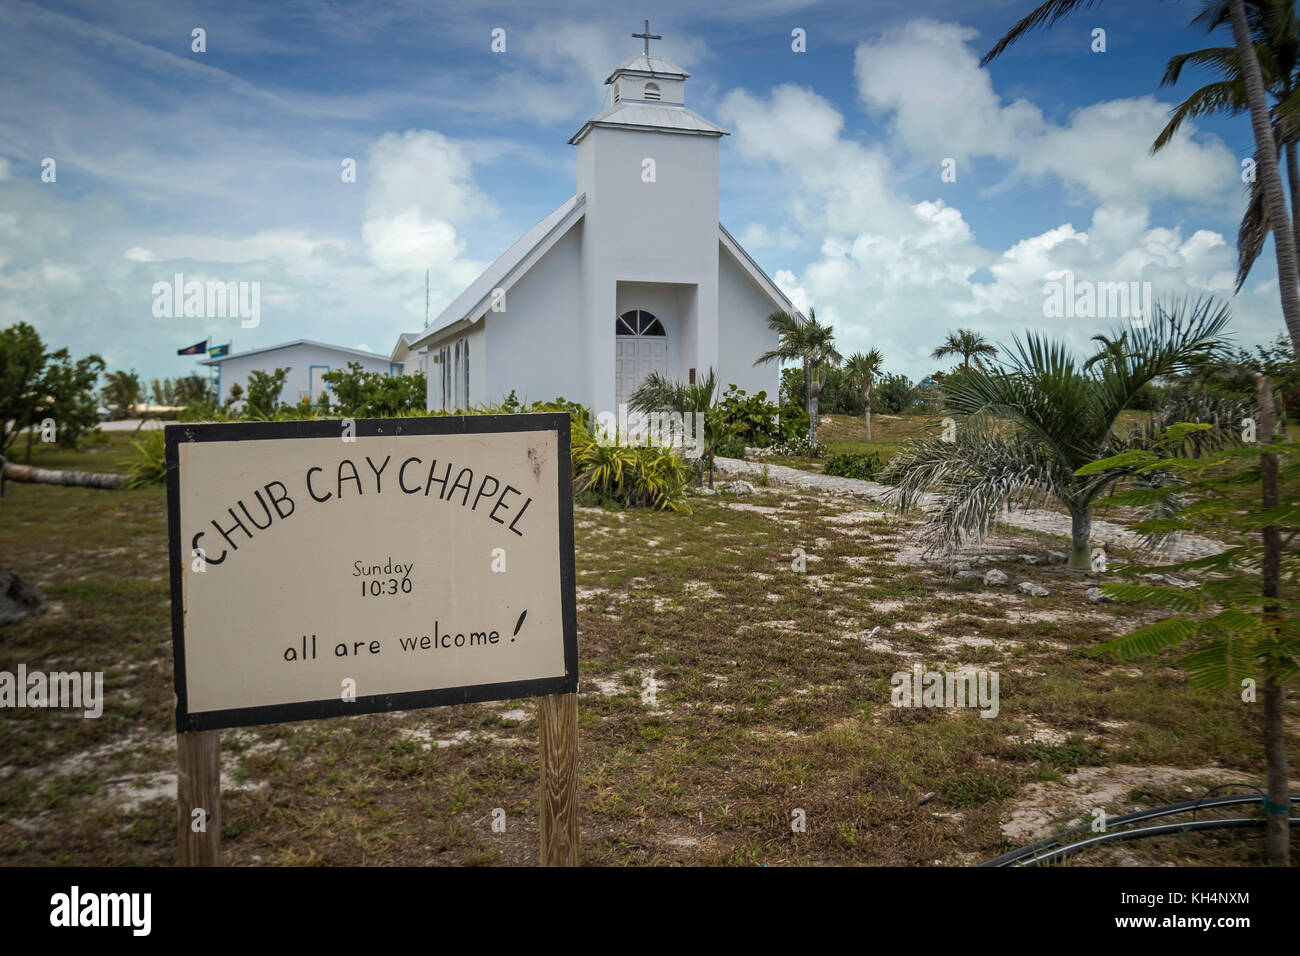 Chub Cay Chapel, Berry Islands, Bahamas Stock Photo